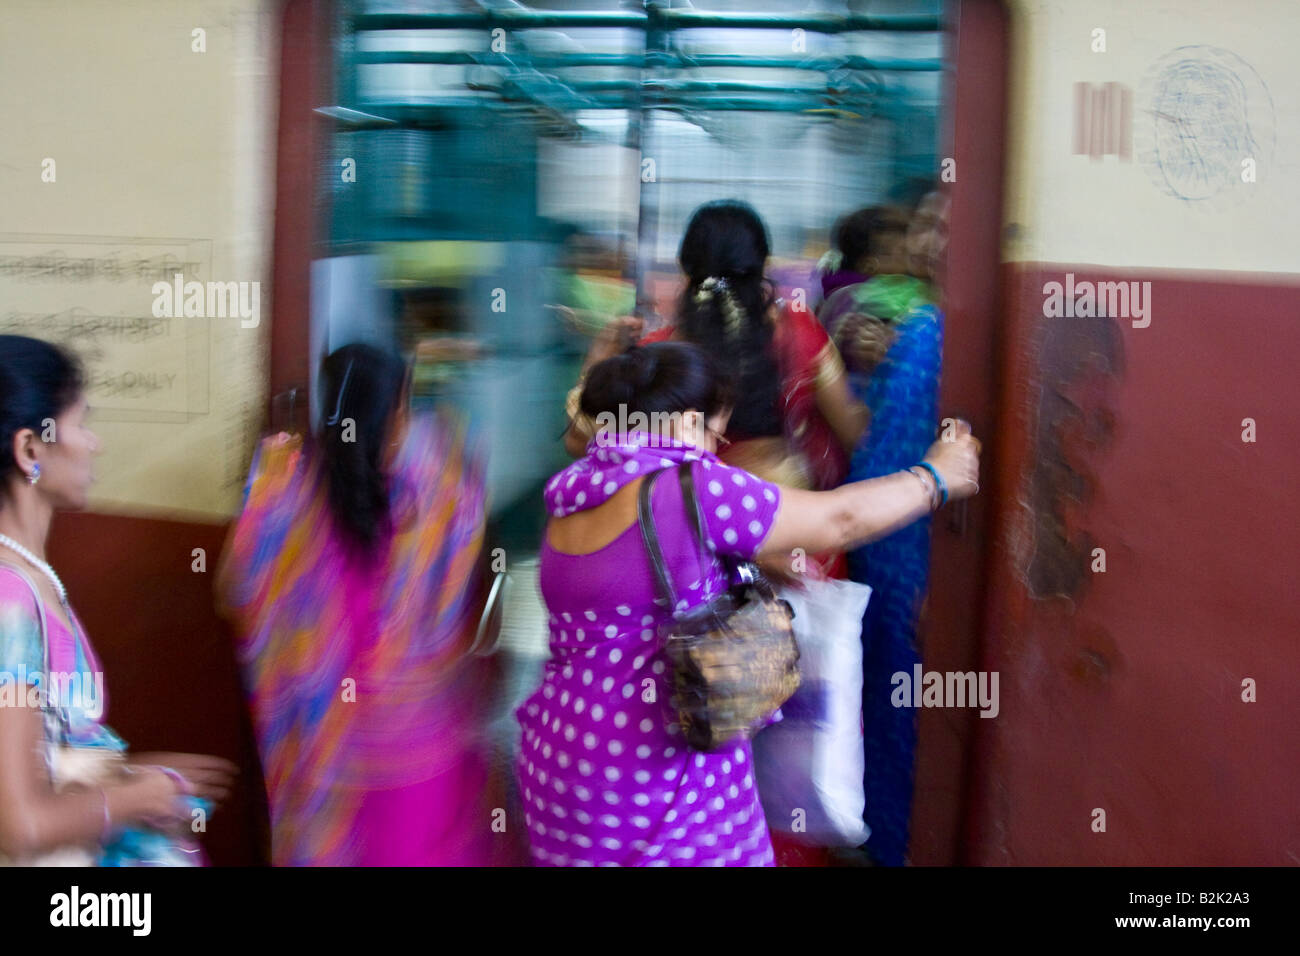 Femme Seulement compartiment sur un train en gare Chhatrapati Shivaji de Mumbai Inde Banque D'Images